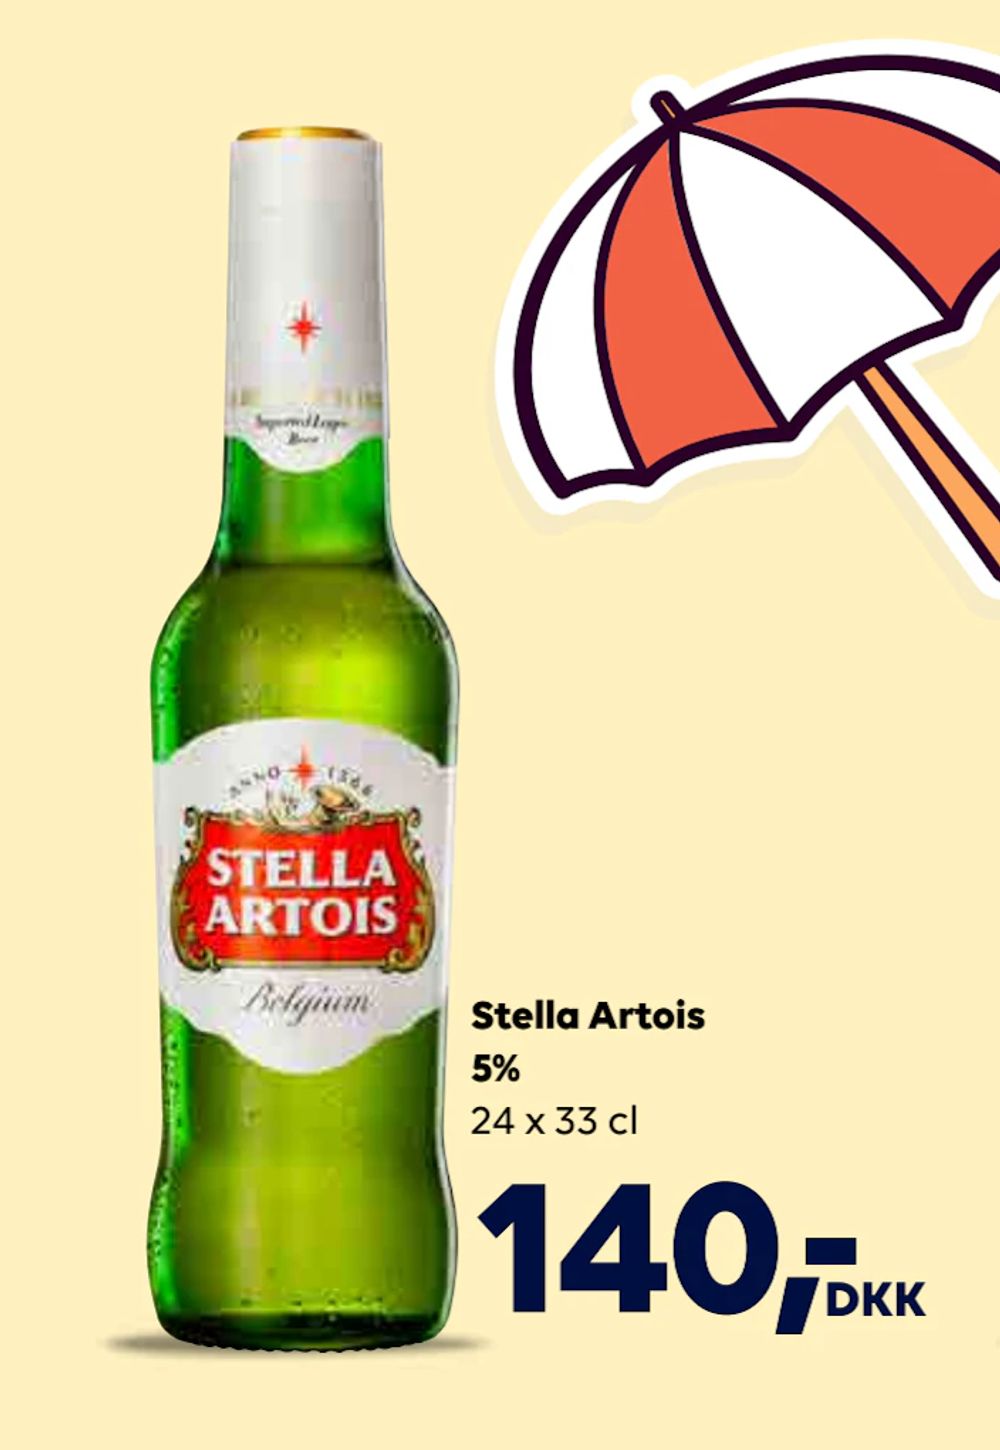 Tilbud på Stella Artois 5% fra BorderShop til 140 kr.